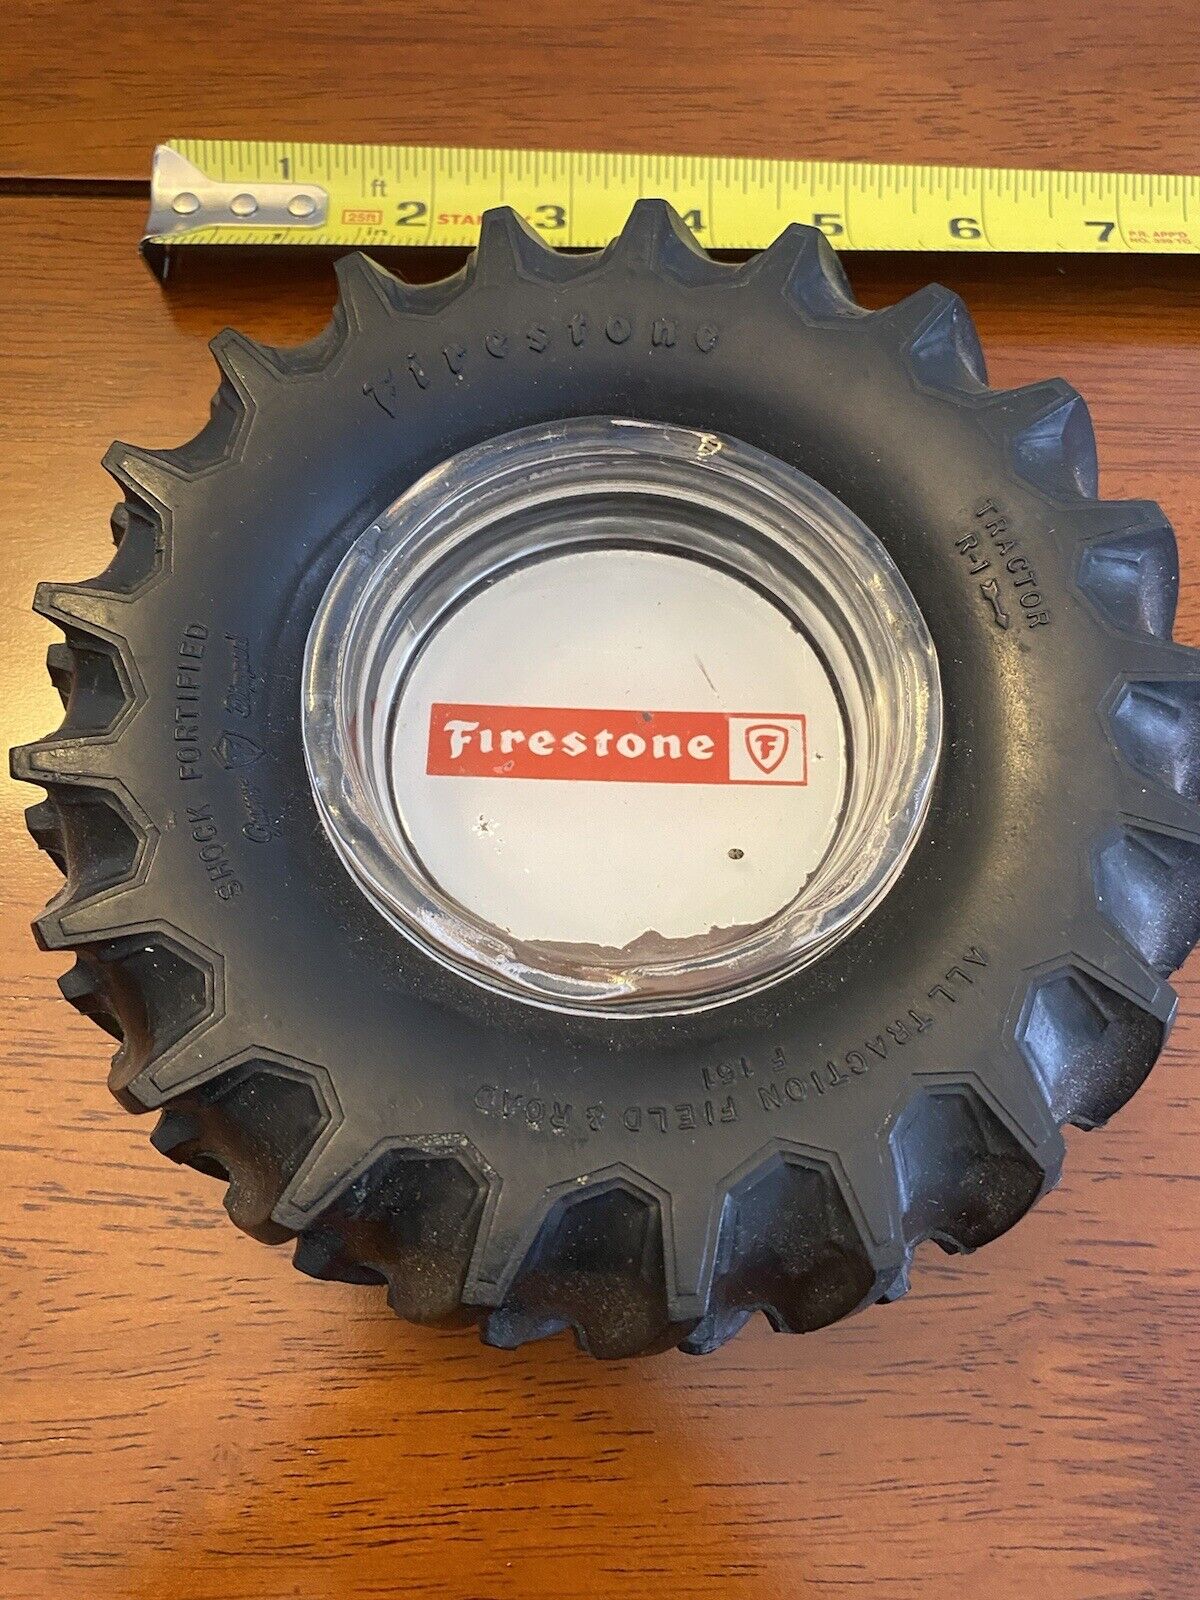 Firestone Tractor Tire  Ashtray